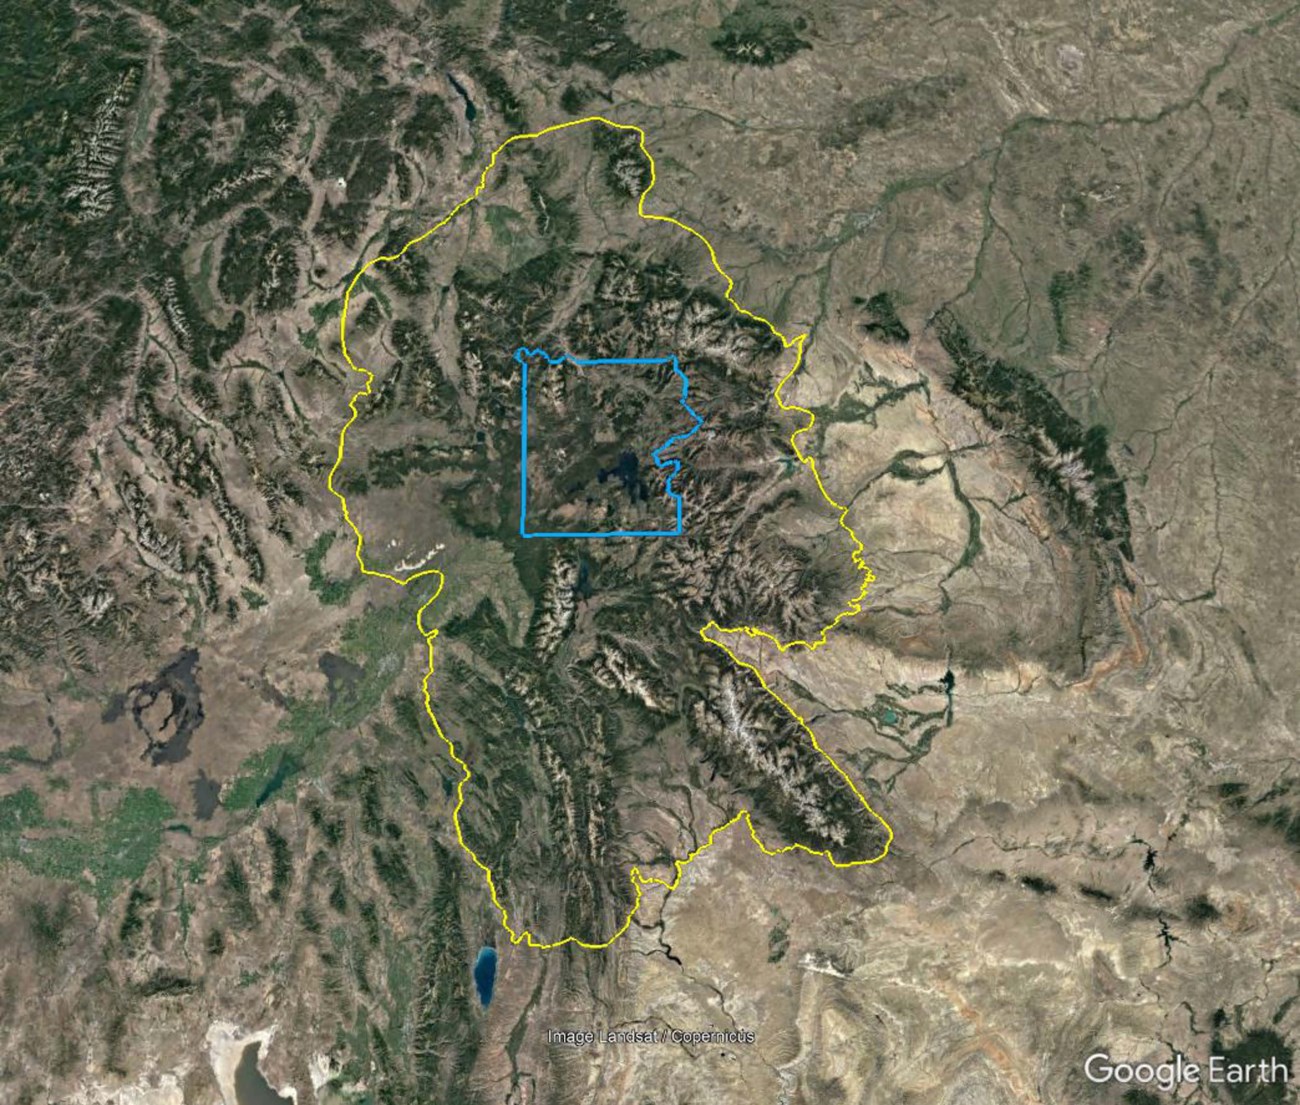 satellite image showing GYE boundaries